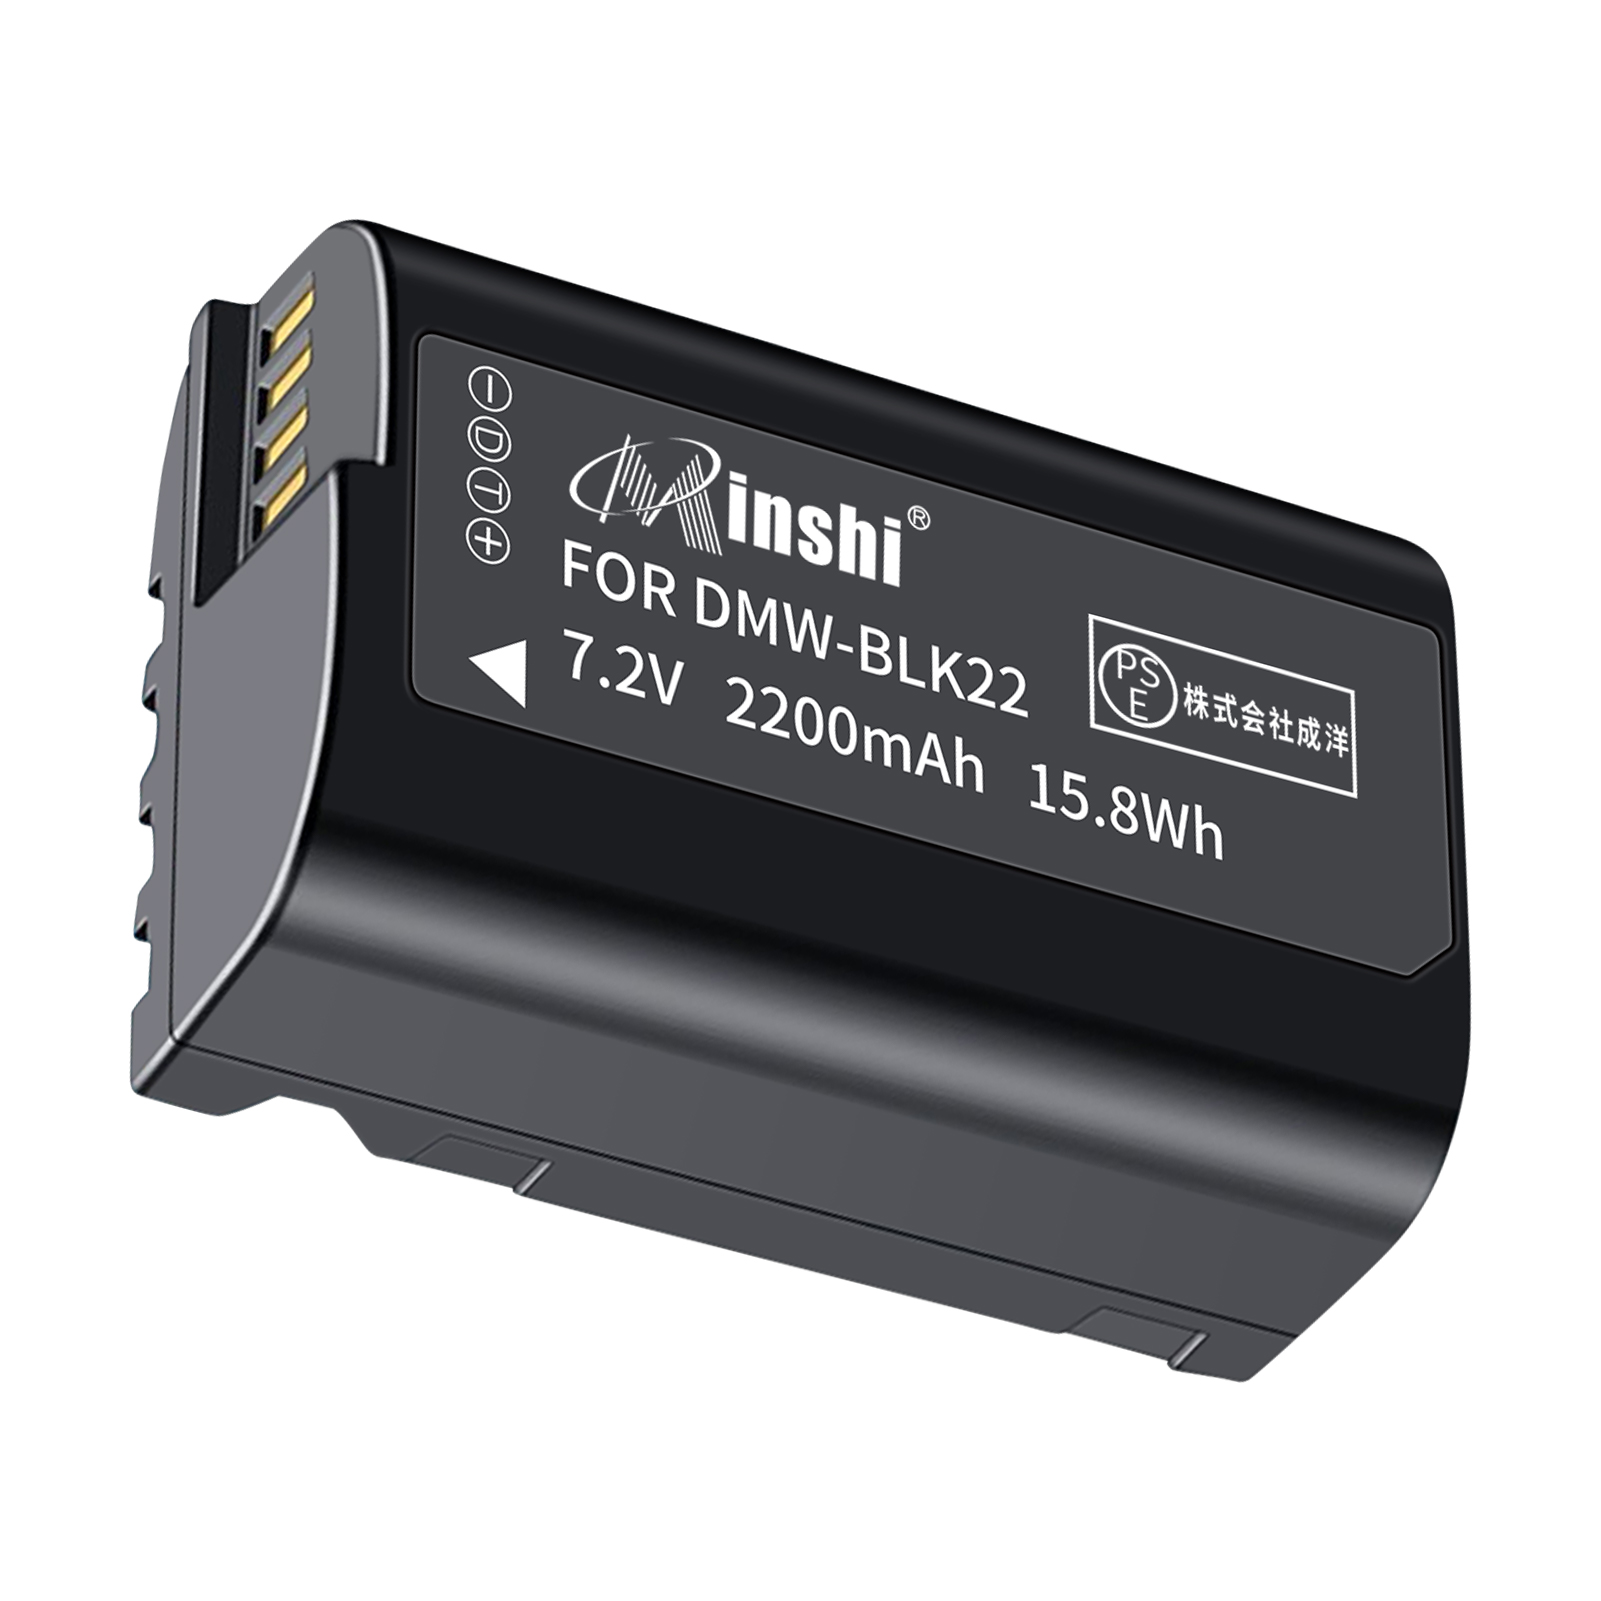 【1年保証】minshi BLK22GK 【2200mAh 7.2V】 PSE認定済 高品質 DMW-BLK22互換バッテリーPHB